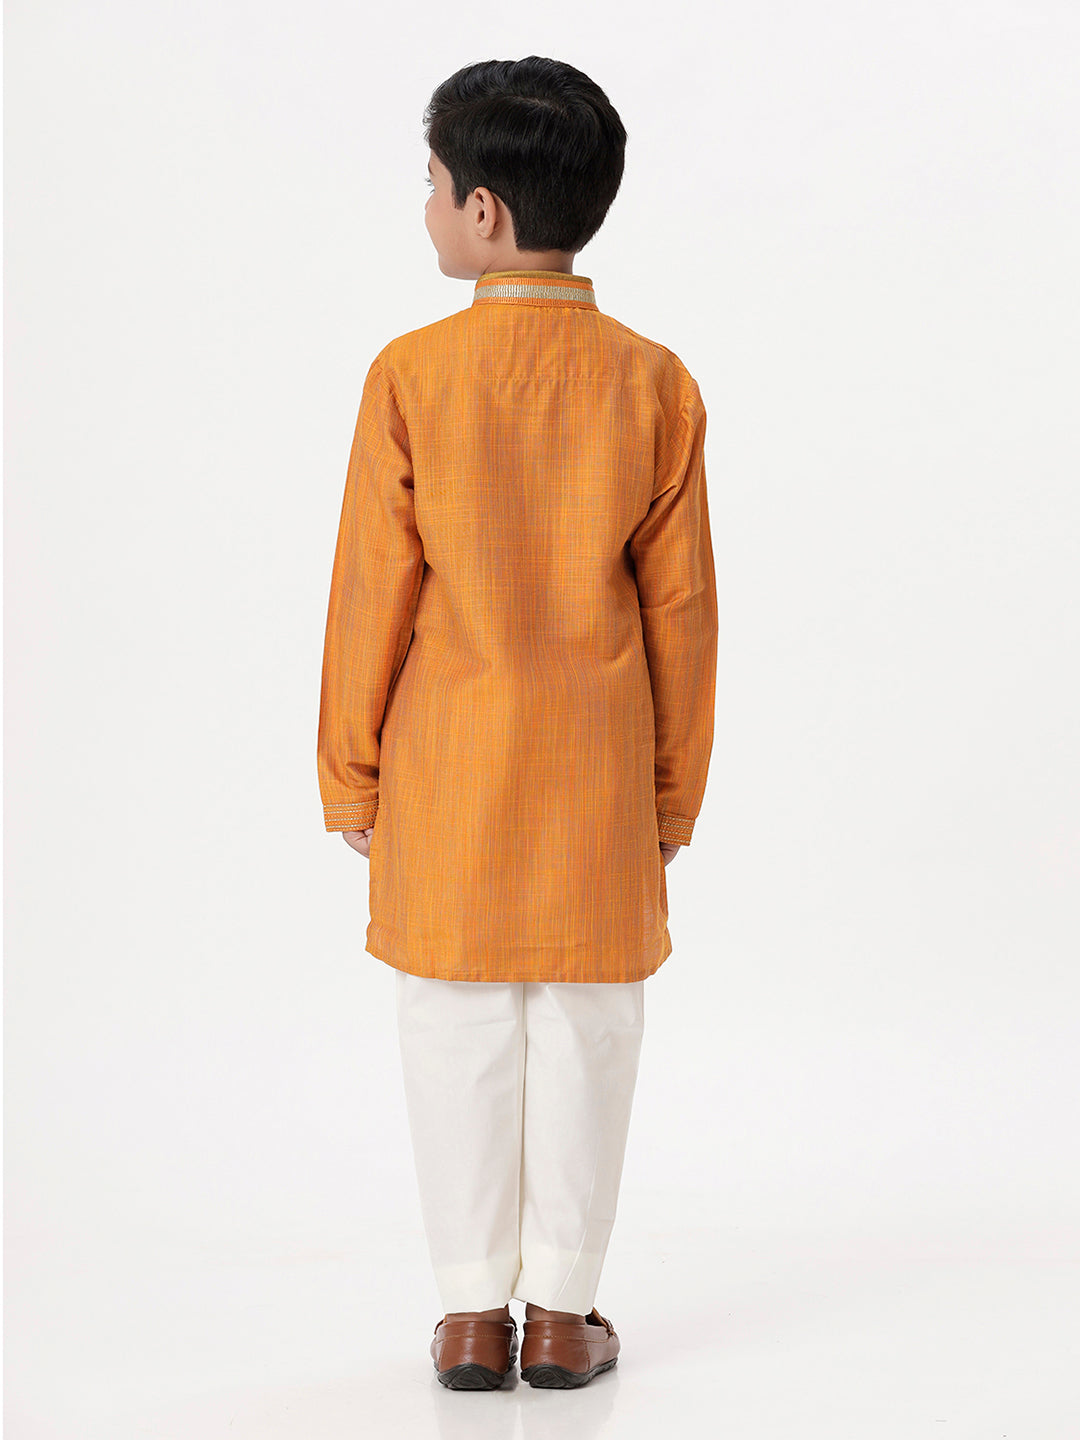 Boys Cotton Embellished Neckline Full Sleeves Orange Kurta with Pyjama Pant Combo EMD3-Back view